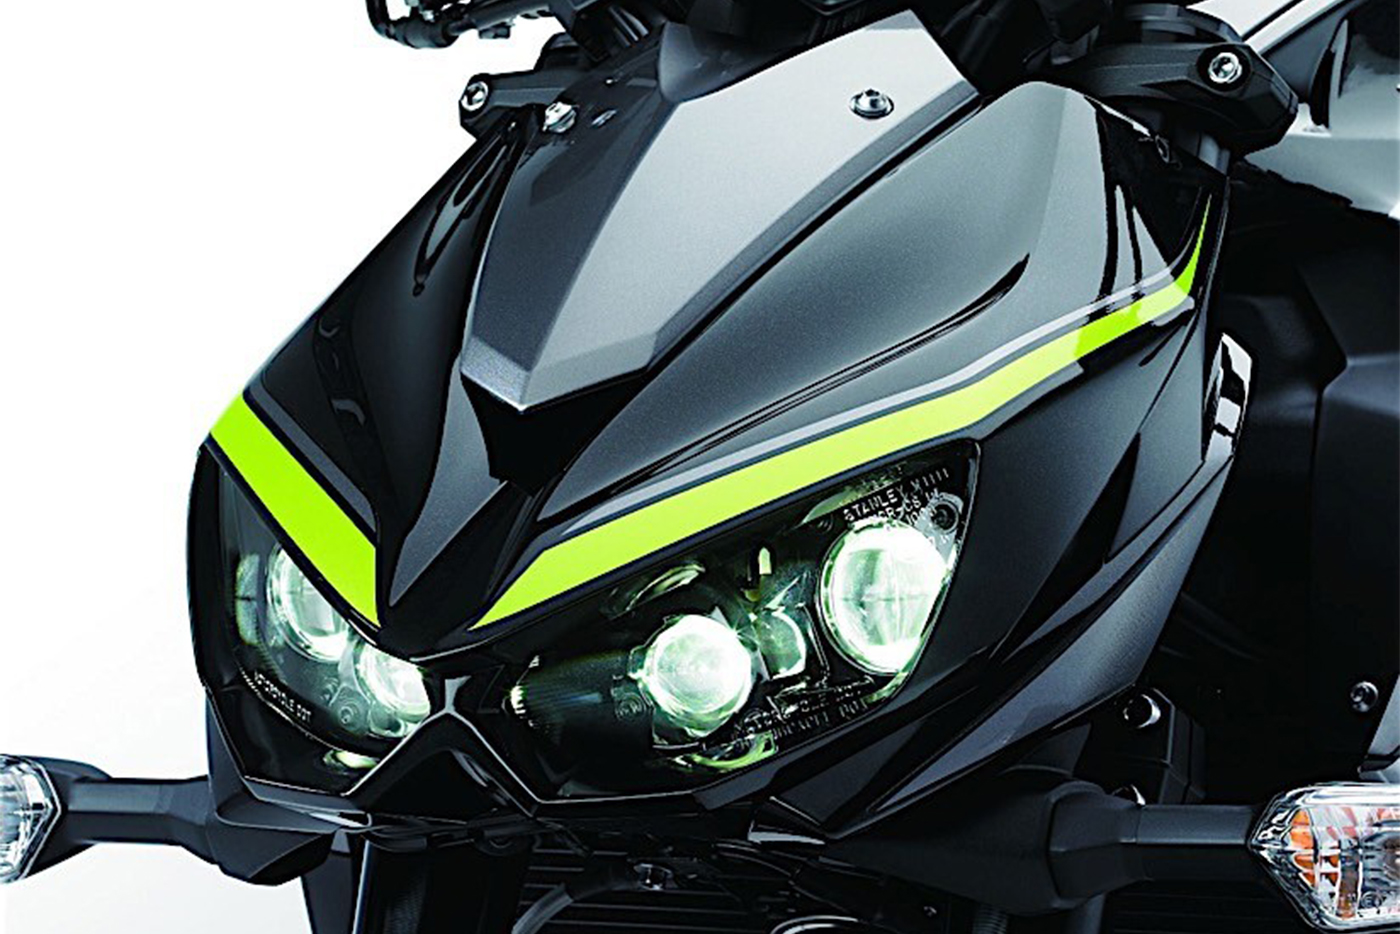 Kawasaki ra mắt tại Việt Nam với 2 bản: Z1000 2017 và Z1000 R Edition 2017-4.jpg